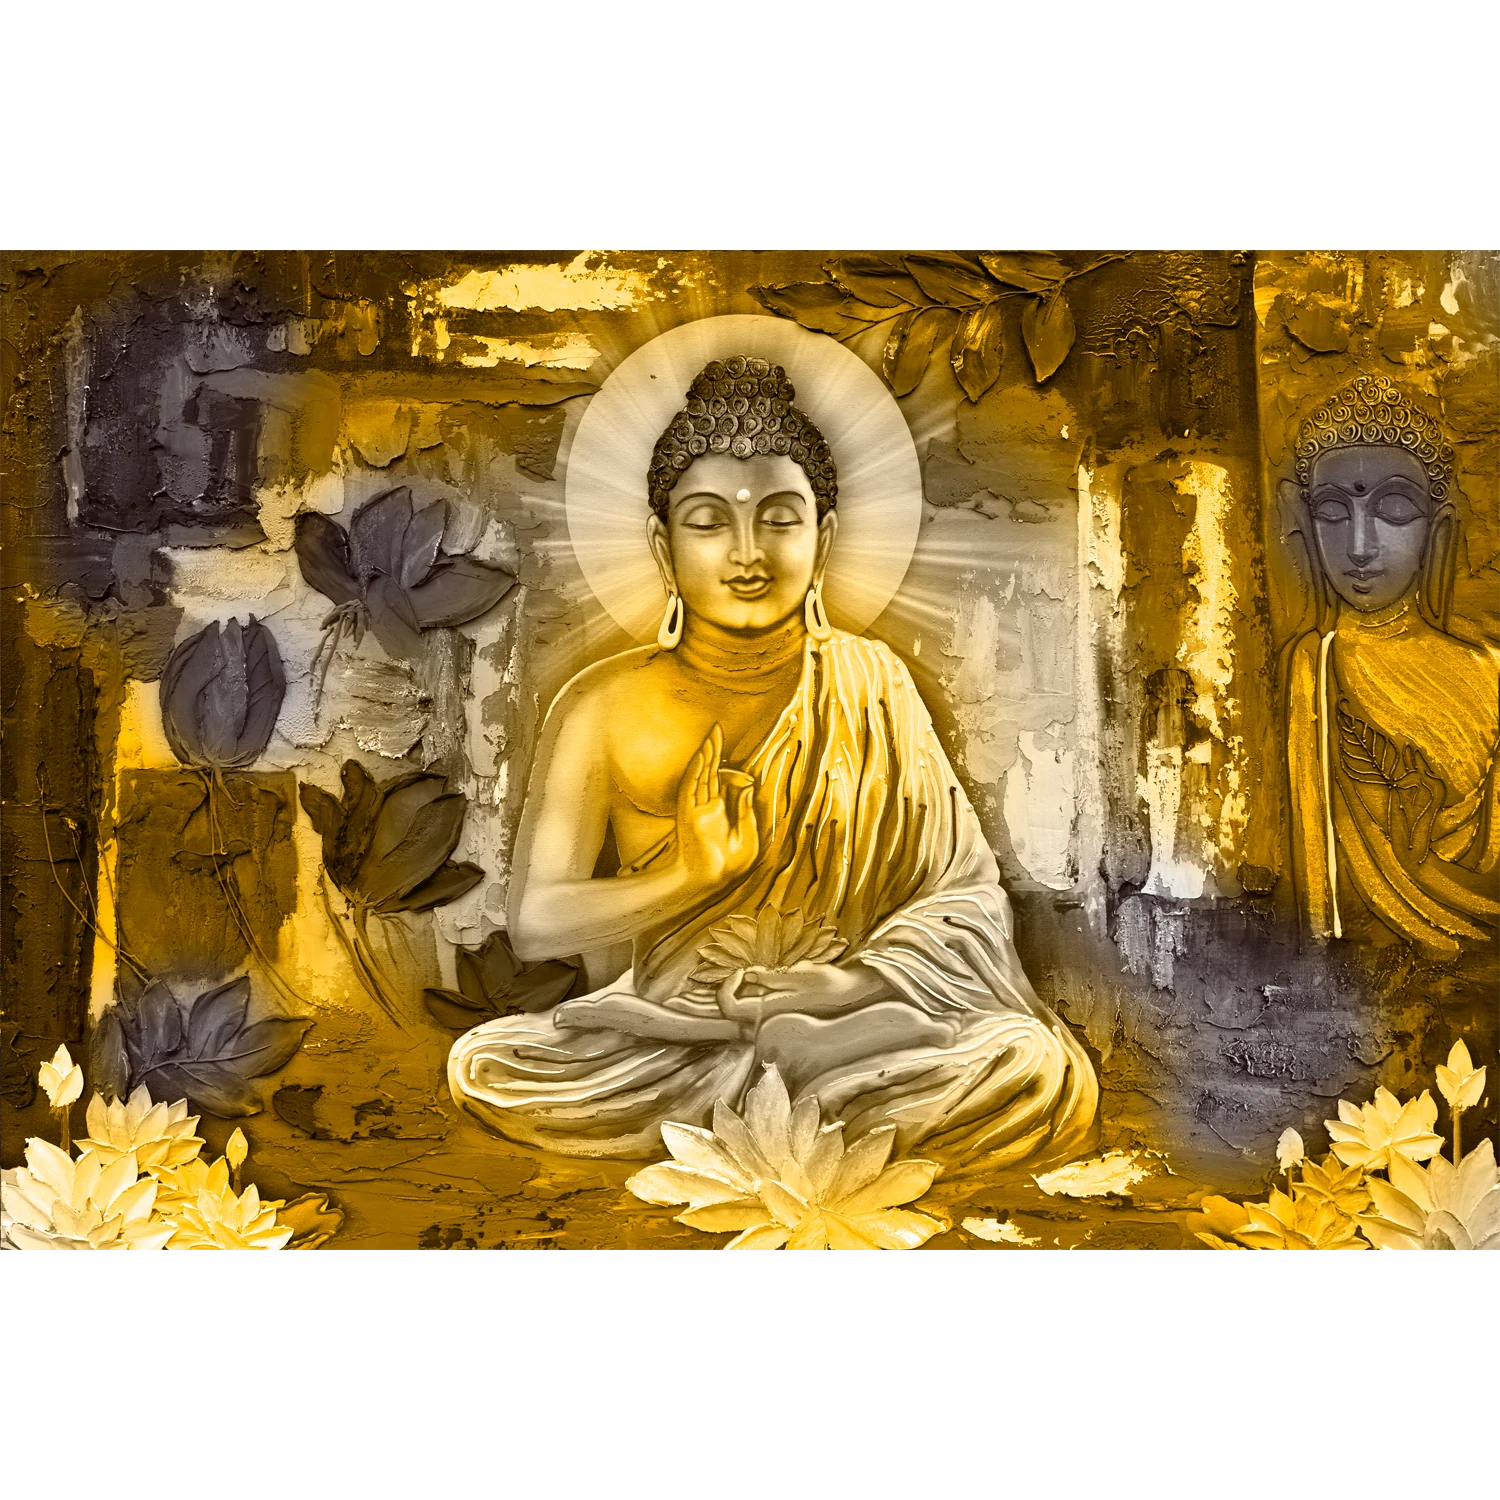 Spiritual Tranquility - Serene Buddha Statue In Nature